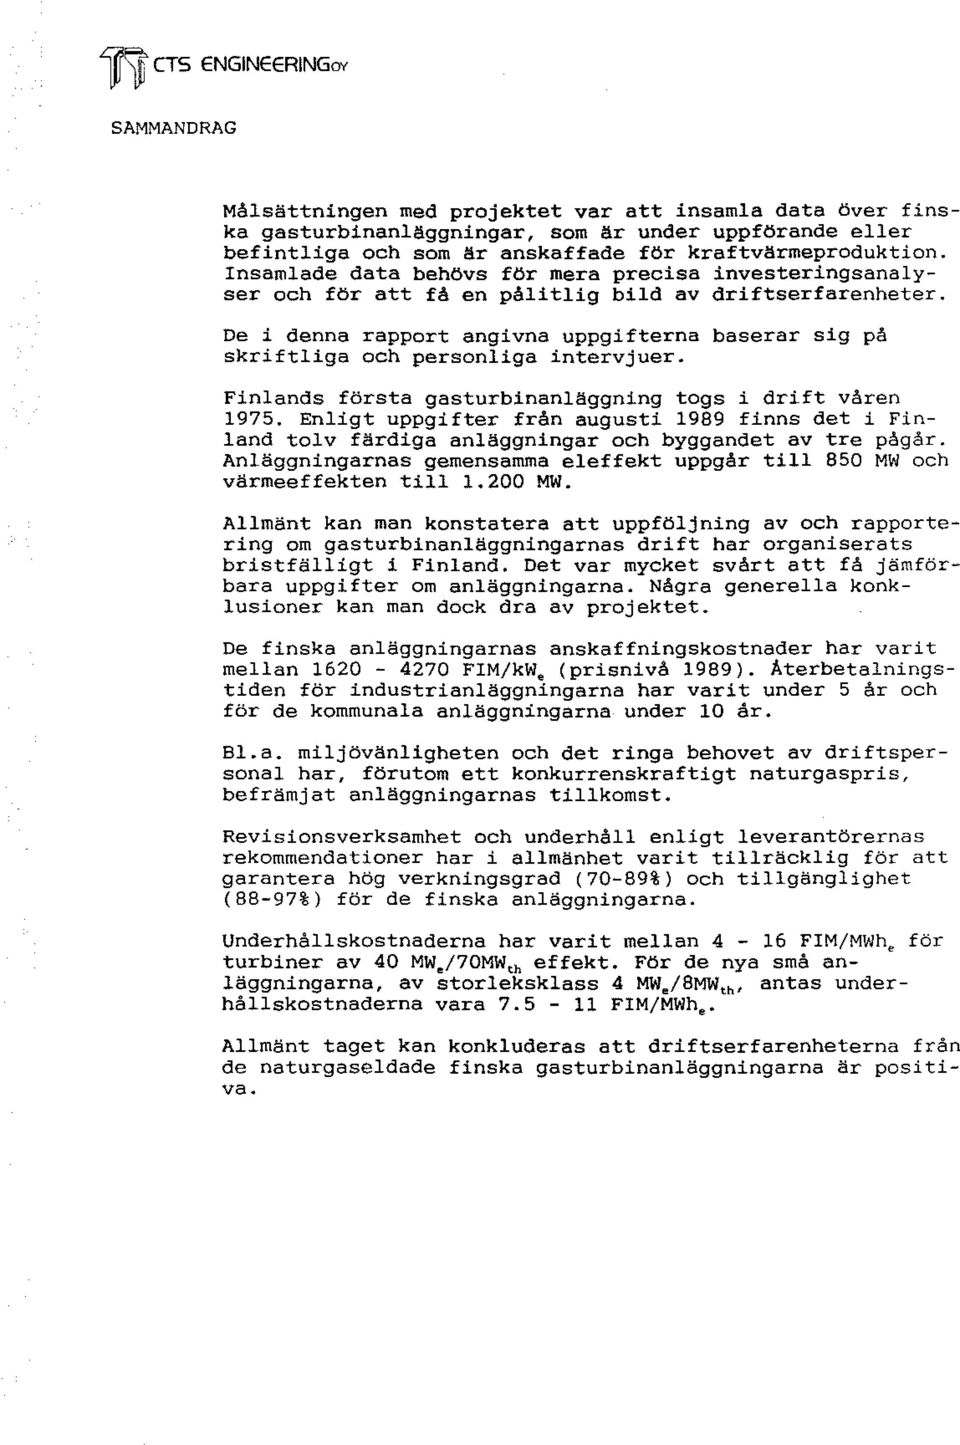 De i denna rapport angivna uppgifterna baserar sig på skriftliga och personliga intervjuer. Finlands första gasturbinanläggning togs i drift våren 1975.